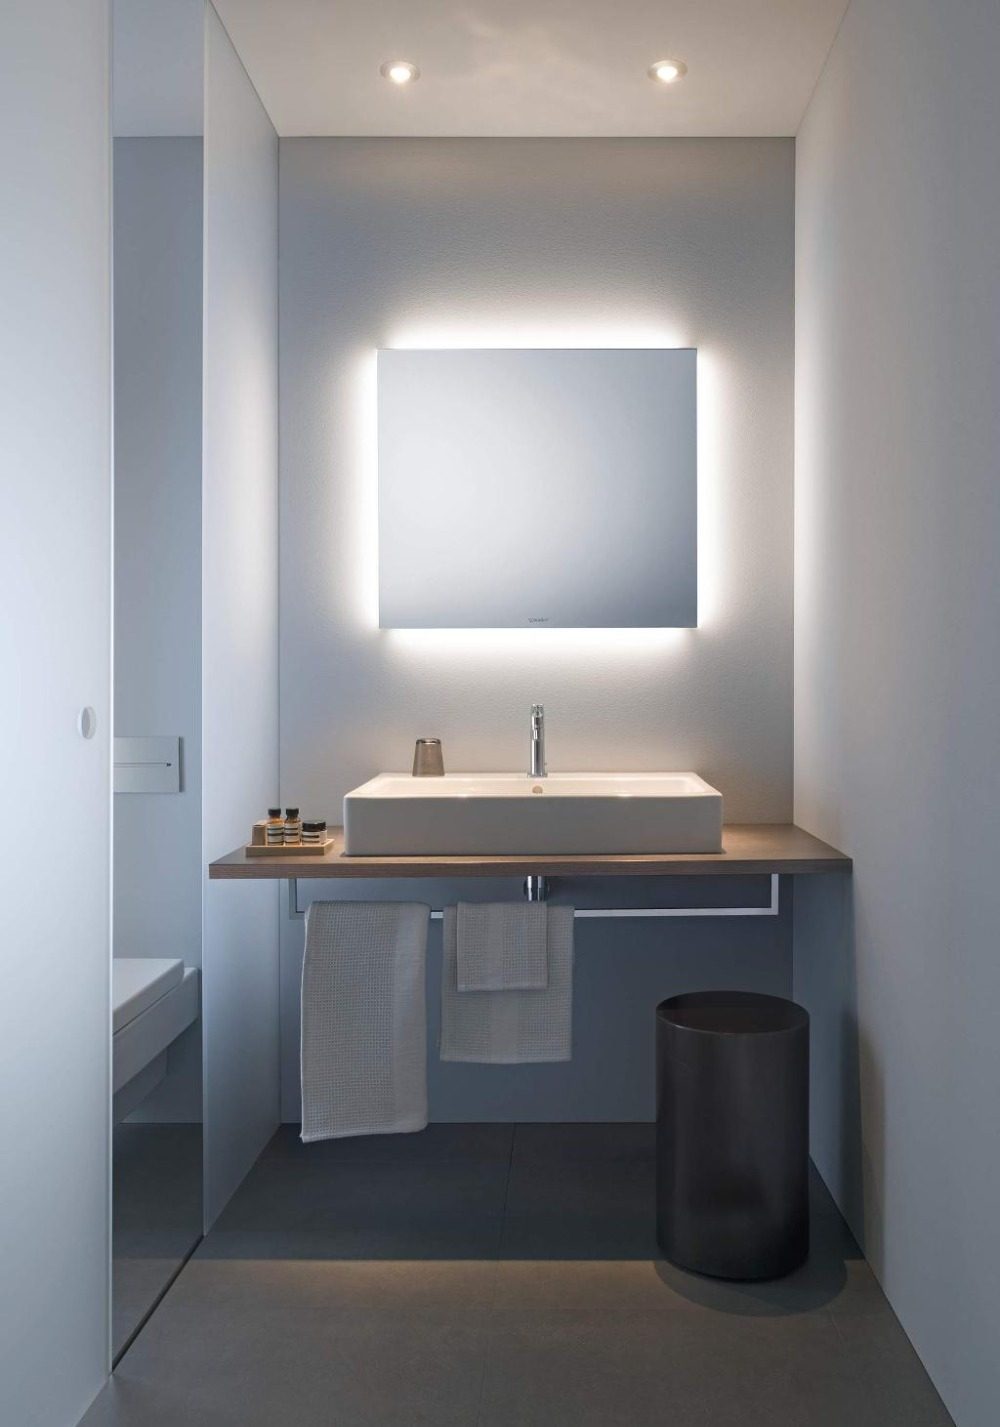 حمام ضيق مع مغسلة ومرآة مربعة ، مضاء بشكل غير مباشر